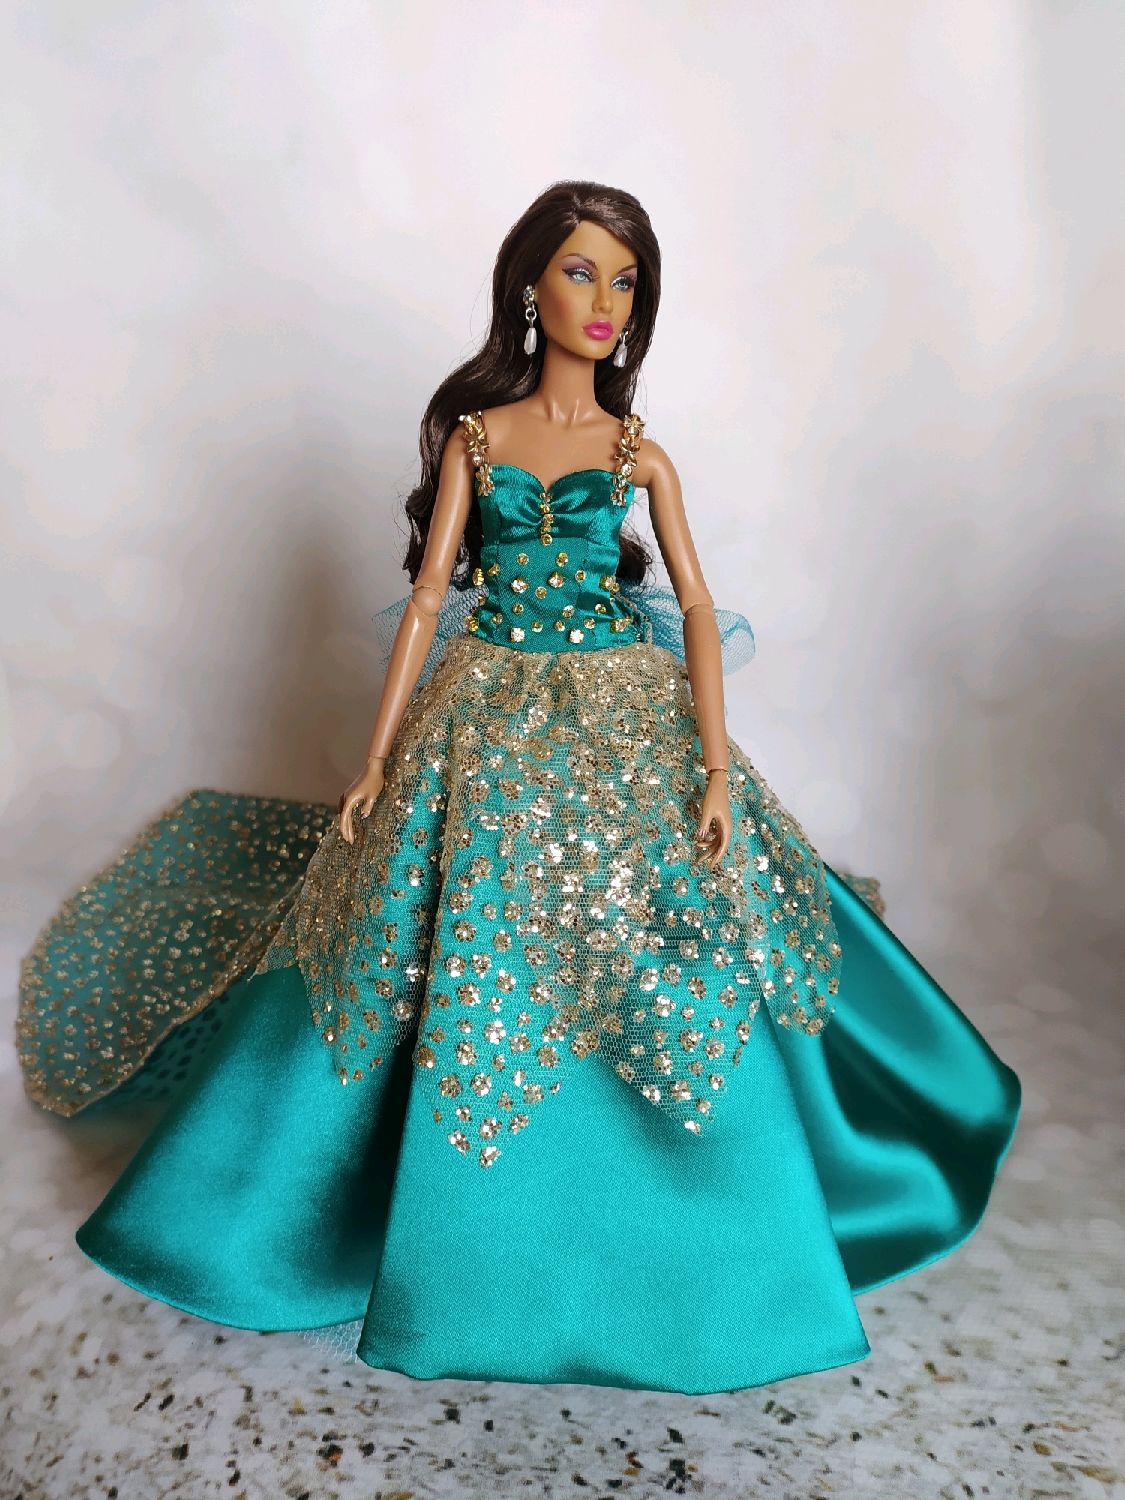 Платья универсальные для куклы Barbie для всех типов фигур, в ассортименте